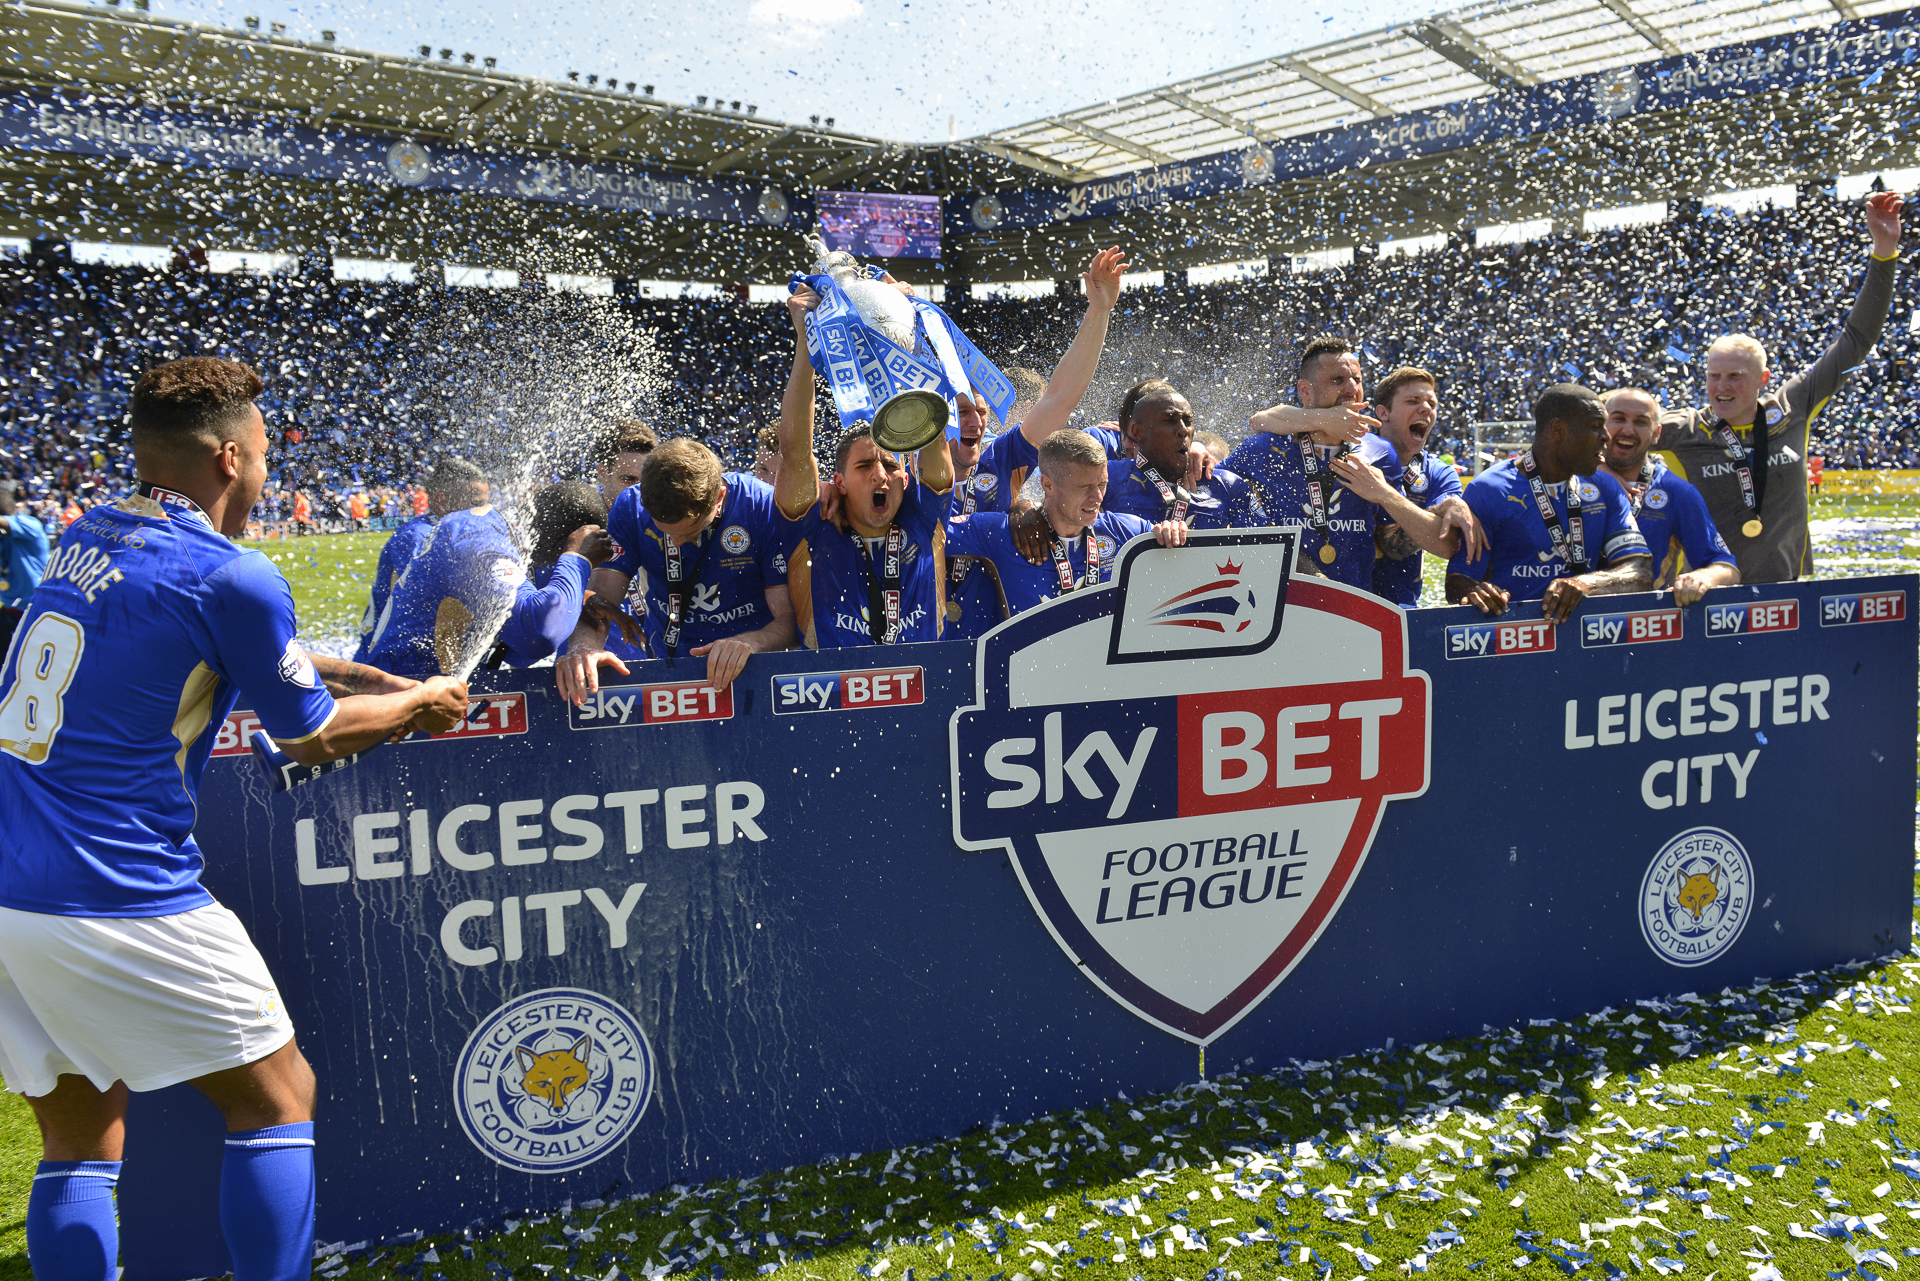 Plantilla del Leicester en la temporada 2013-14 celebrando el título de segunda división inglesa